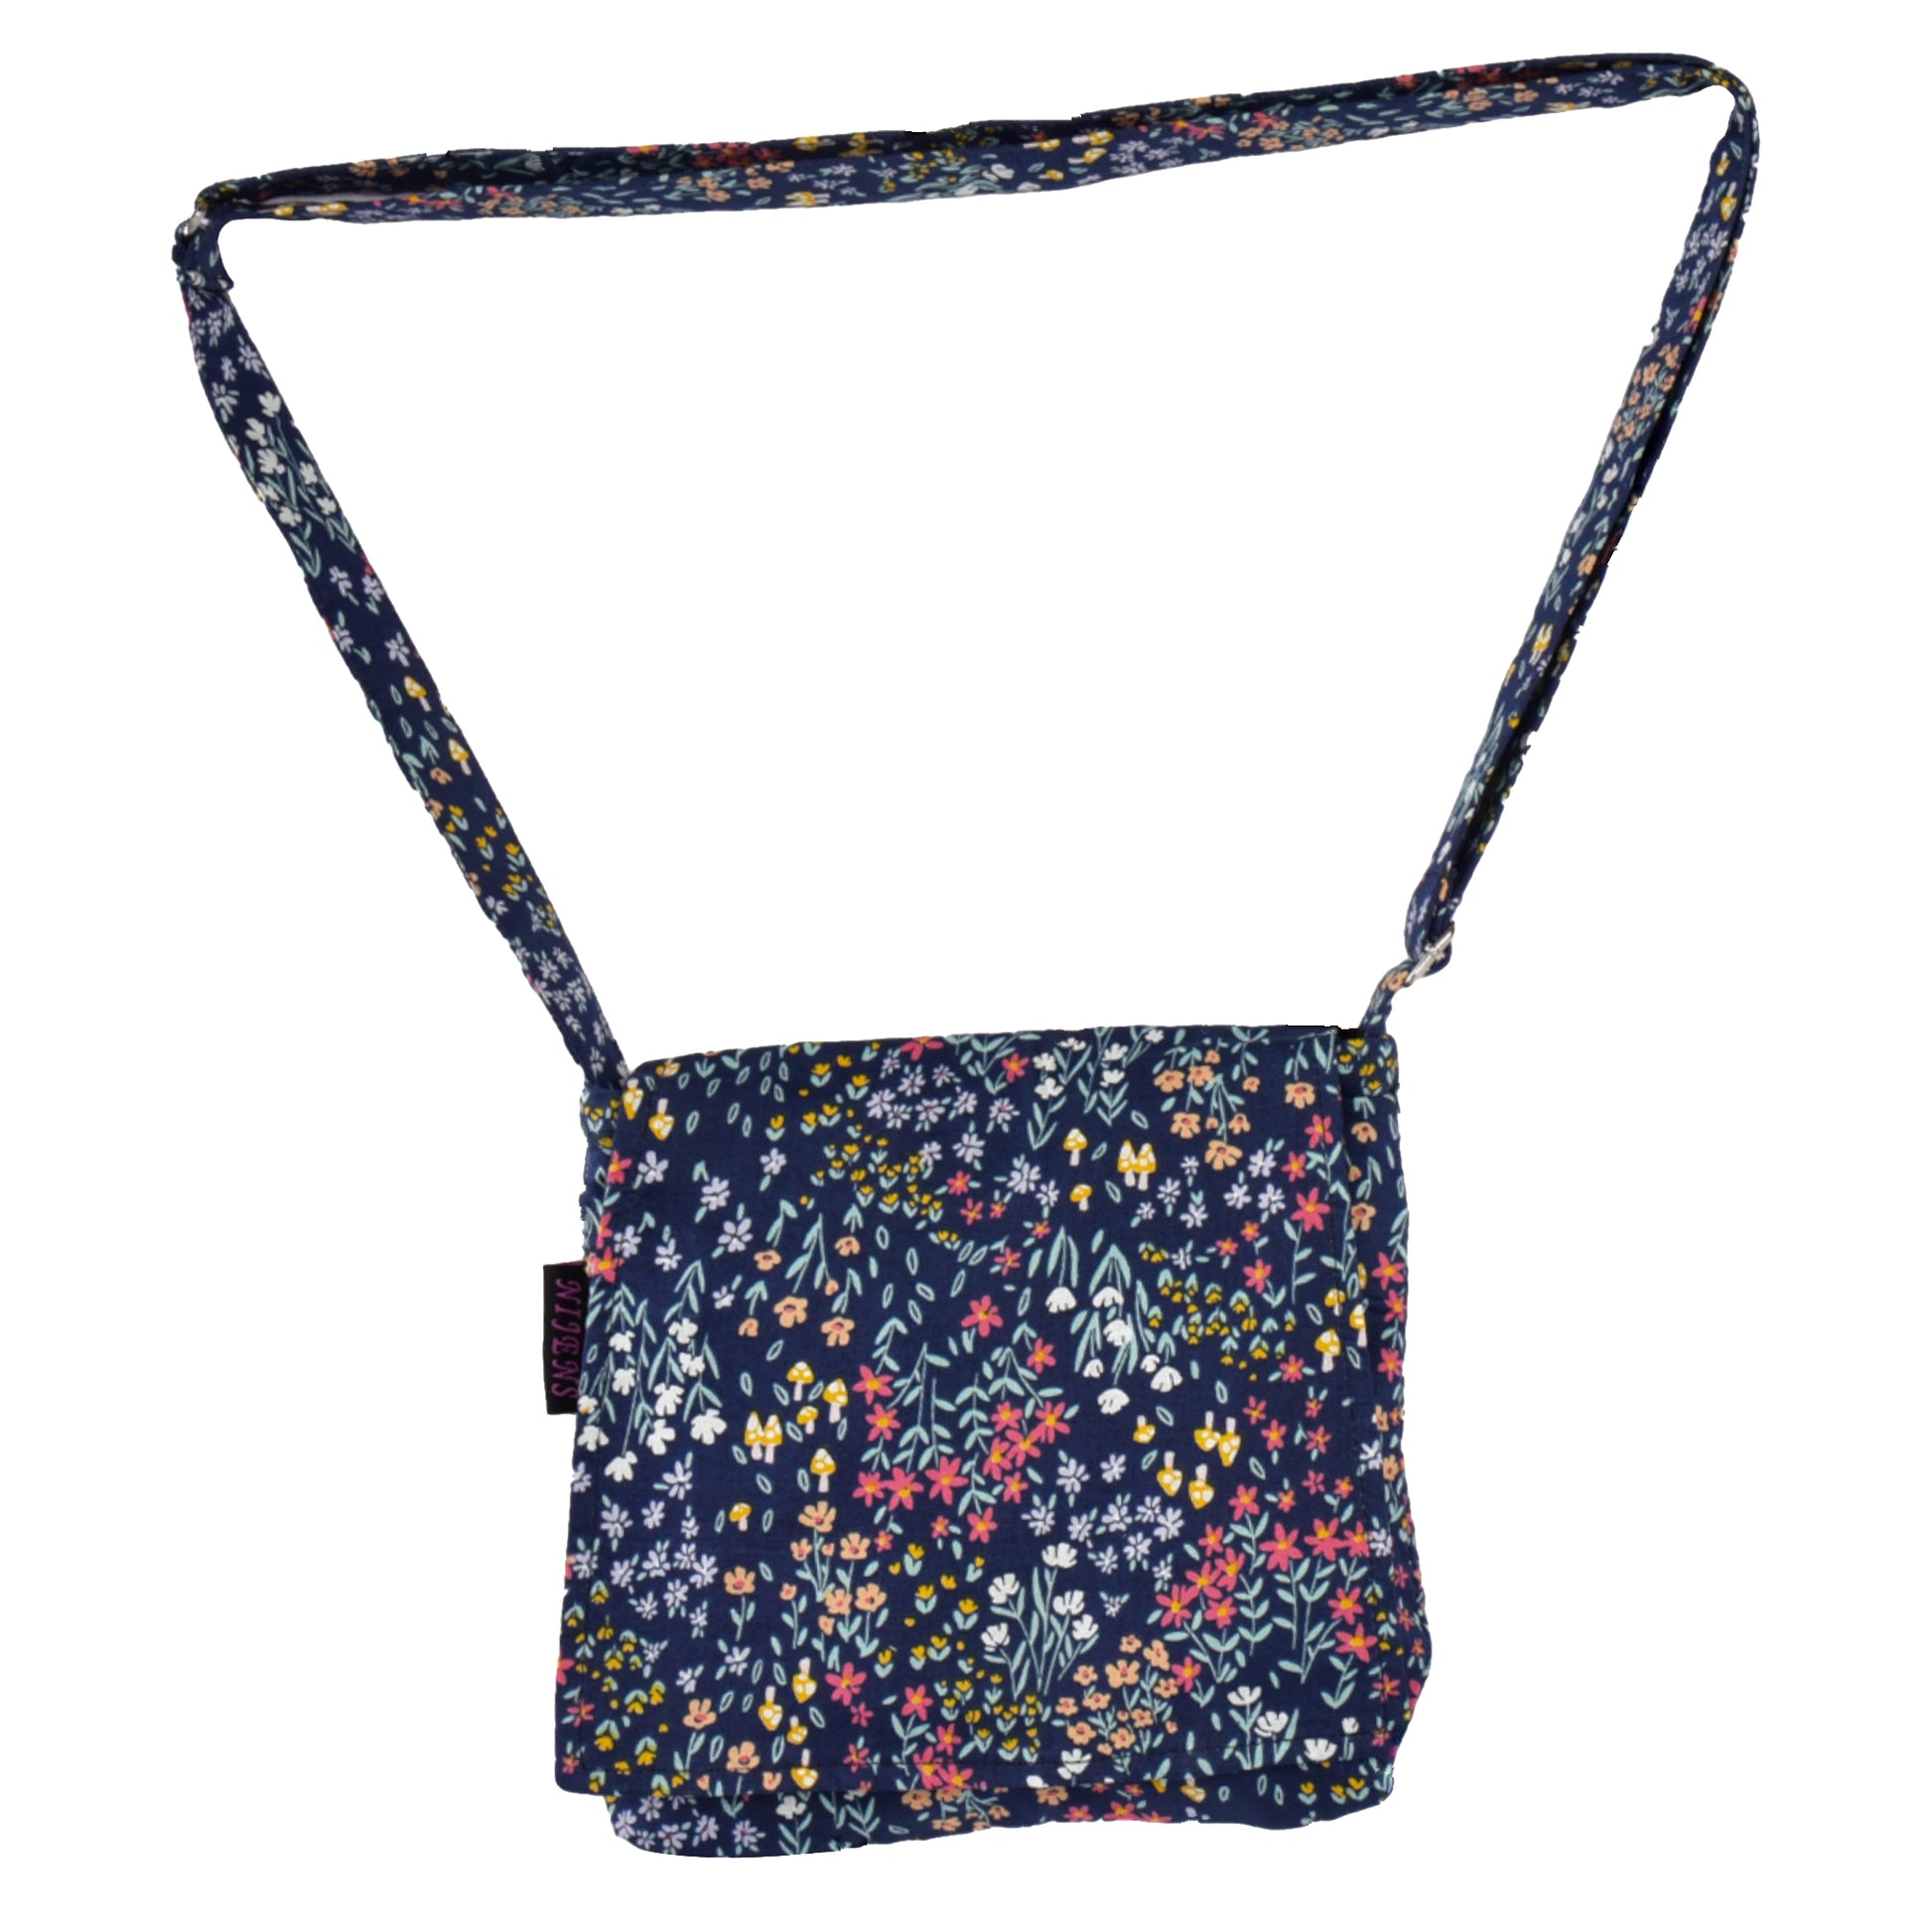 Kleine Tasche, Umhängetasche aus Baumwolle, dunkelblau und Blumenmuster. Tragegurt ist stufenlos verstellbar.